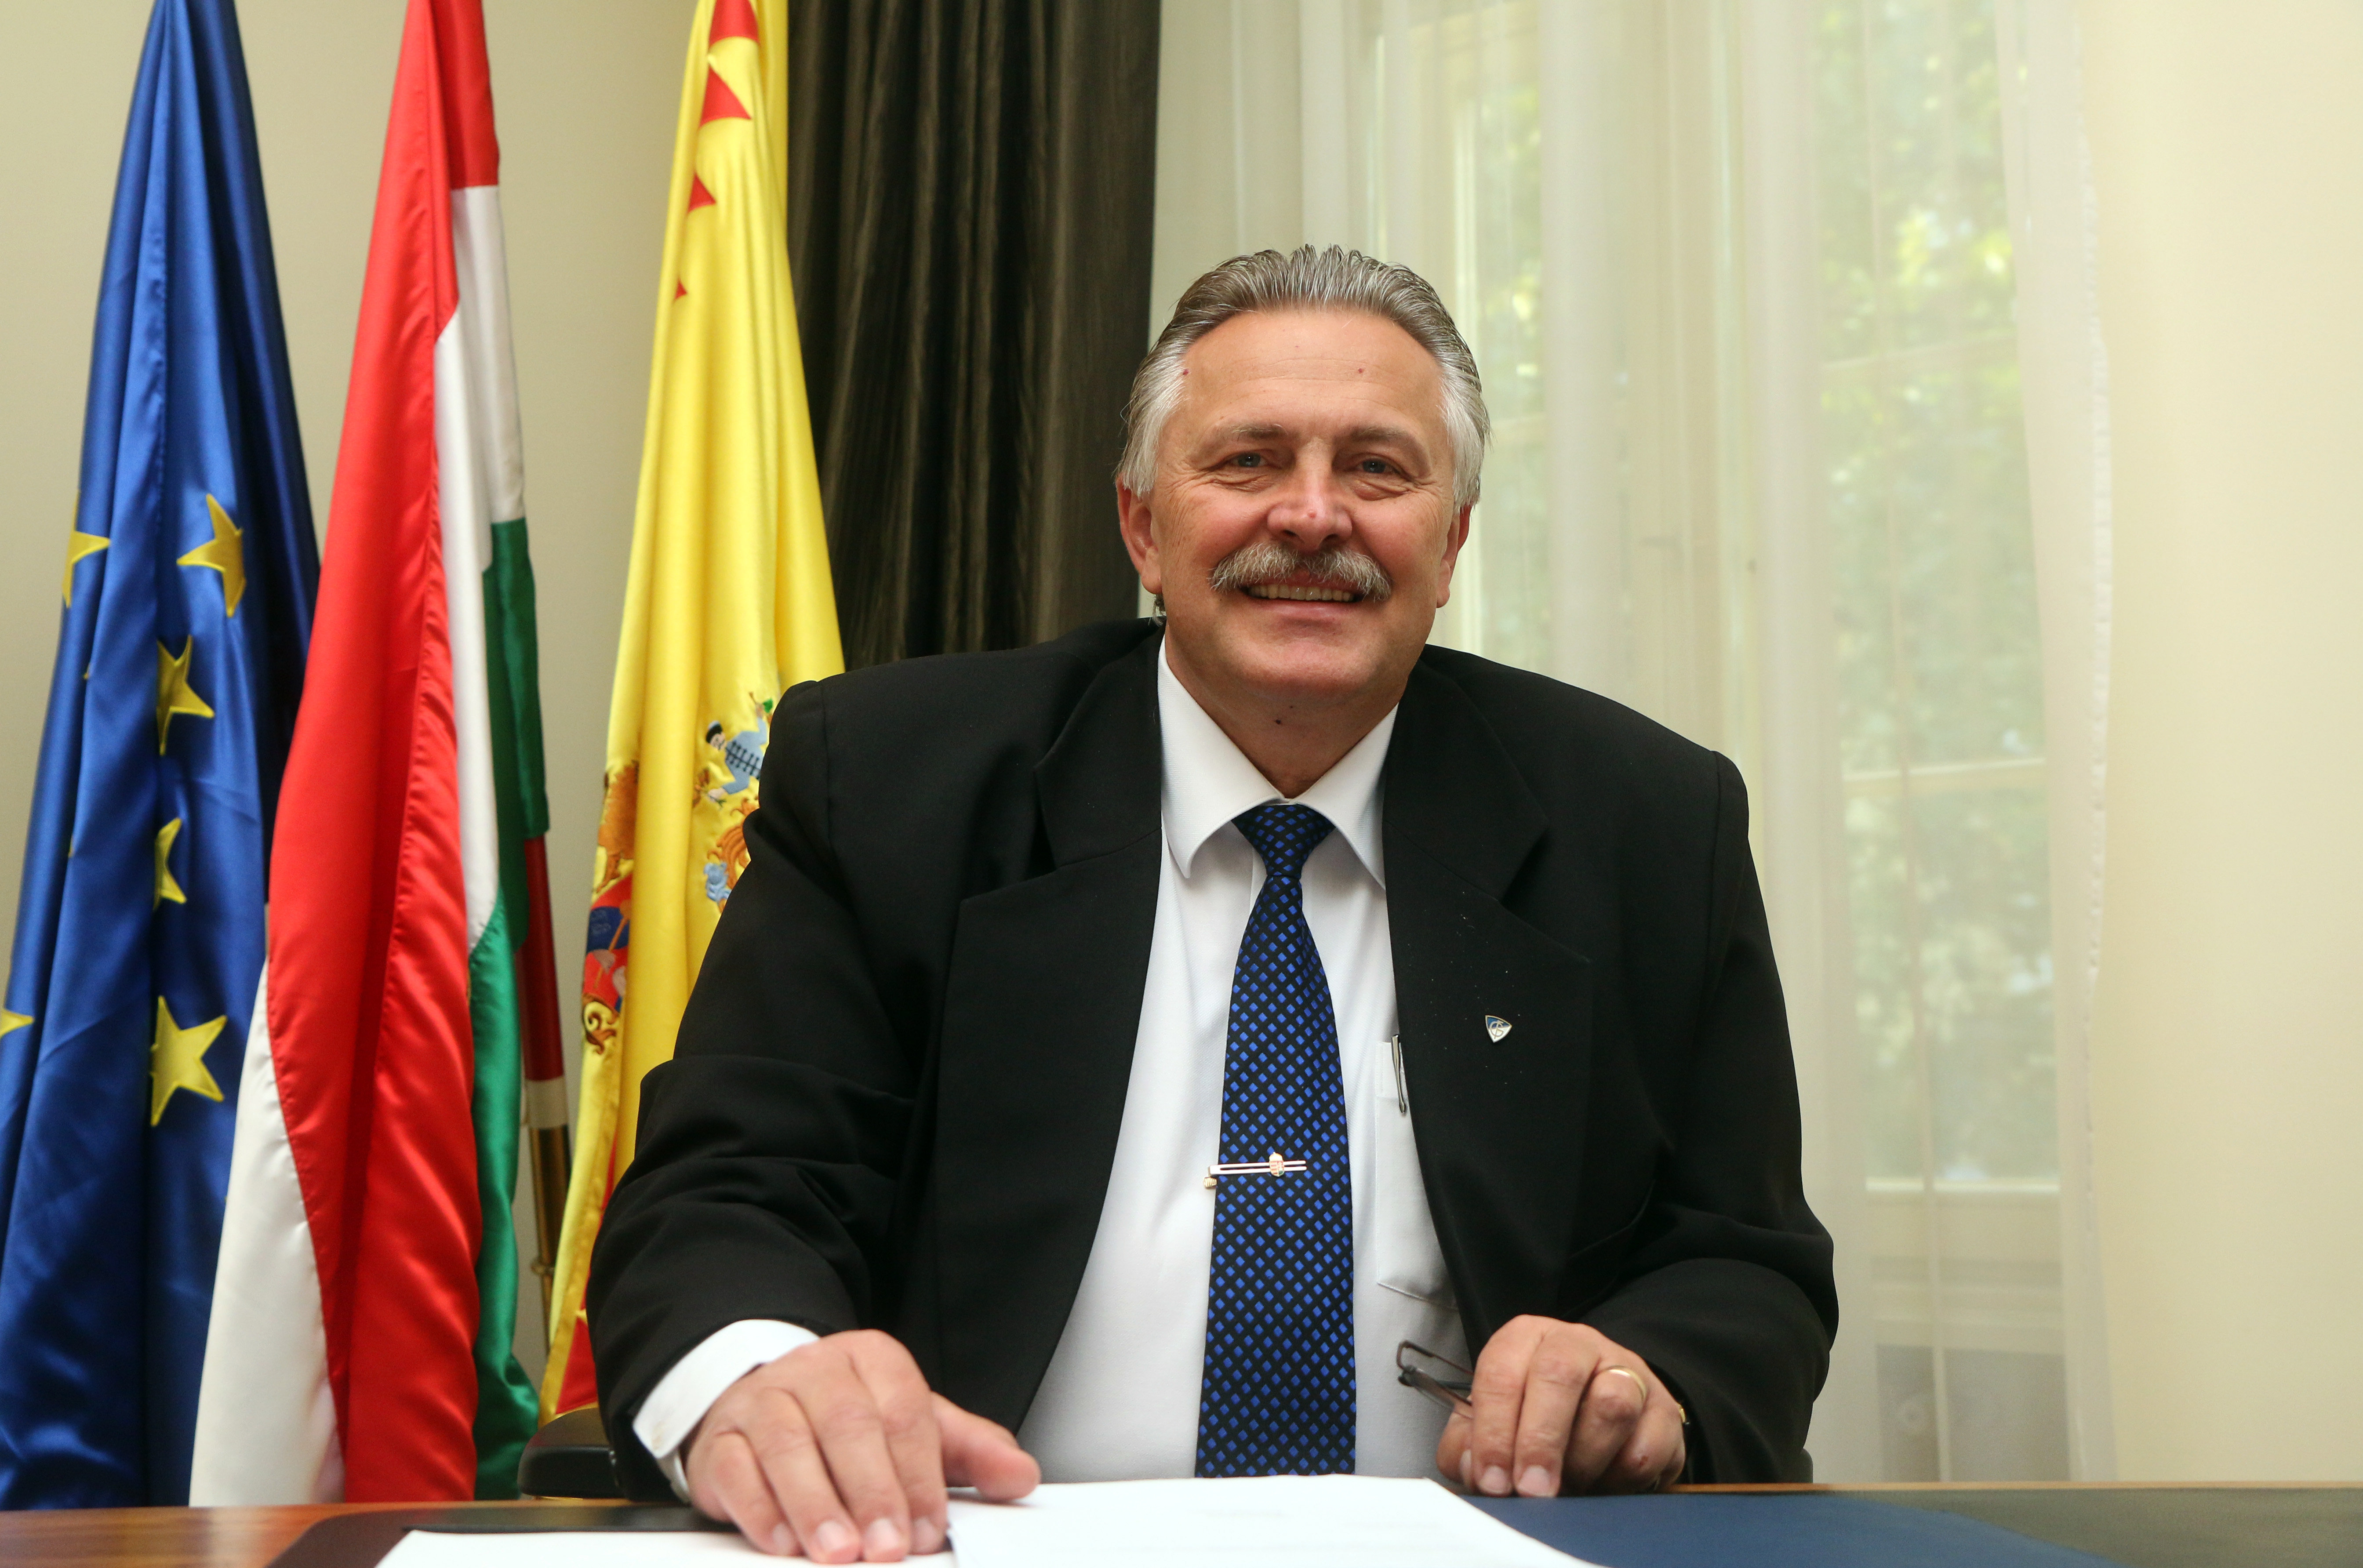 Miskolc ellenzéki polgármesterét kérte fel az egyetem kuratóriumi tagjának Varga Judit